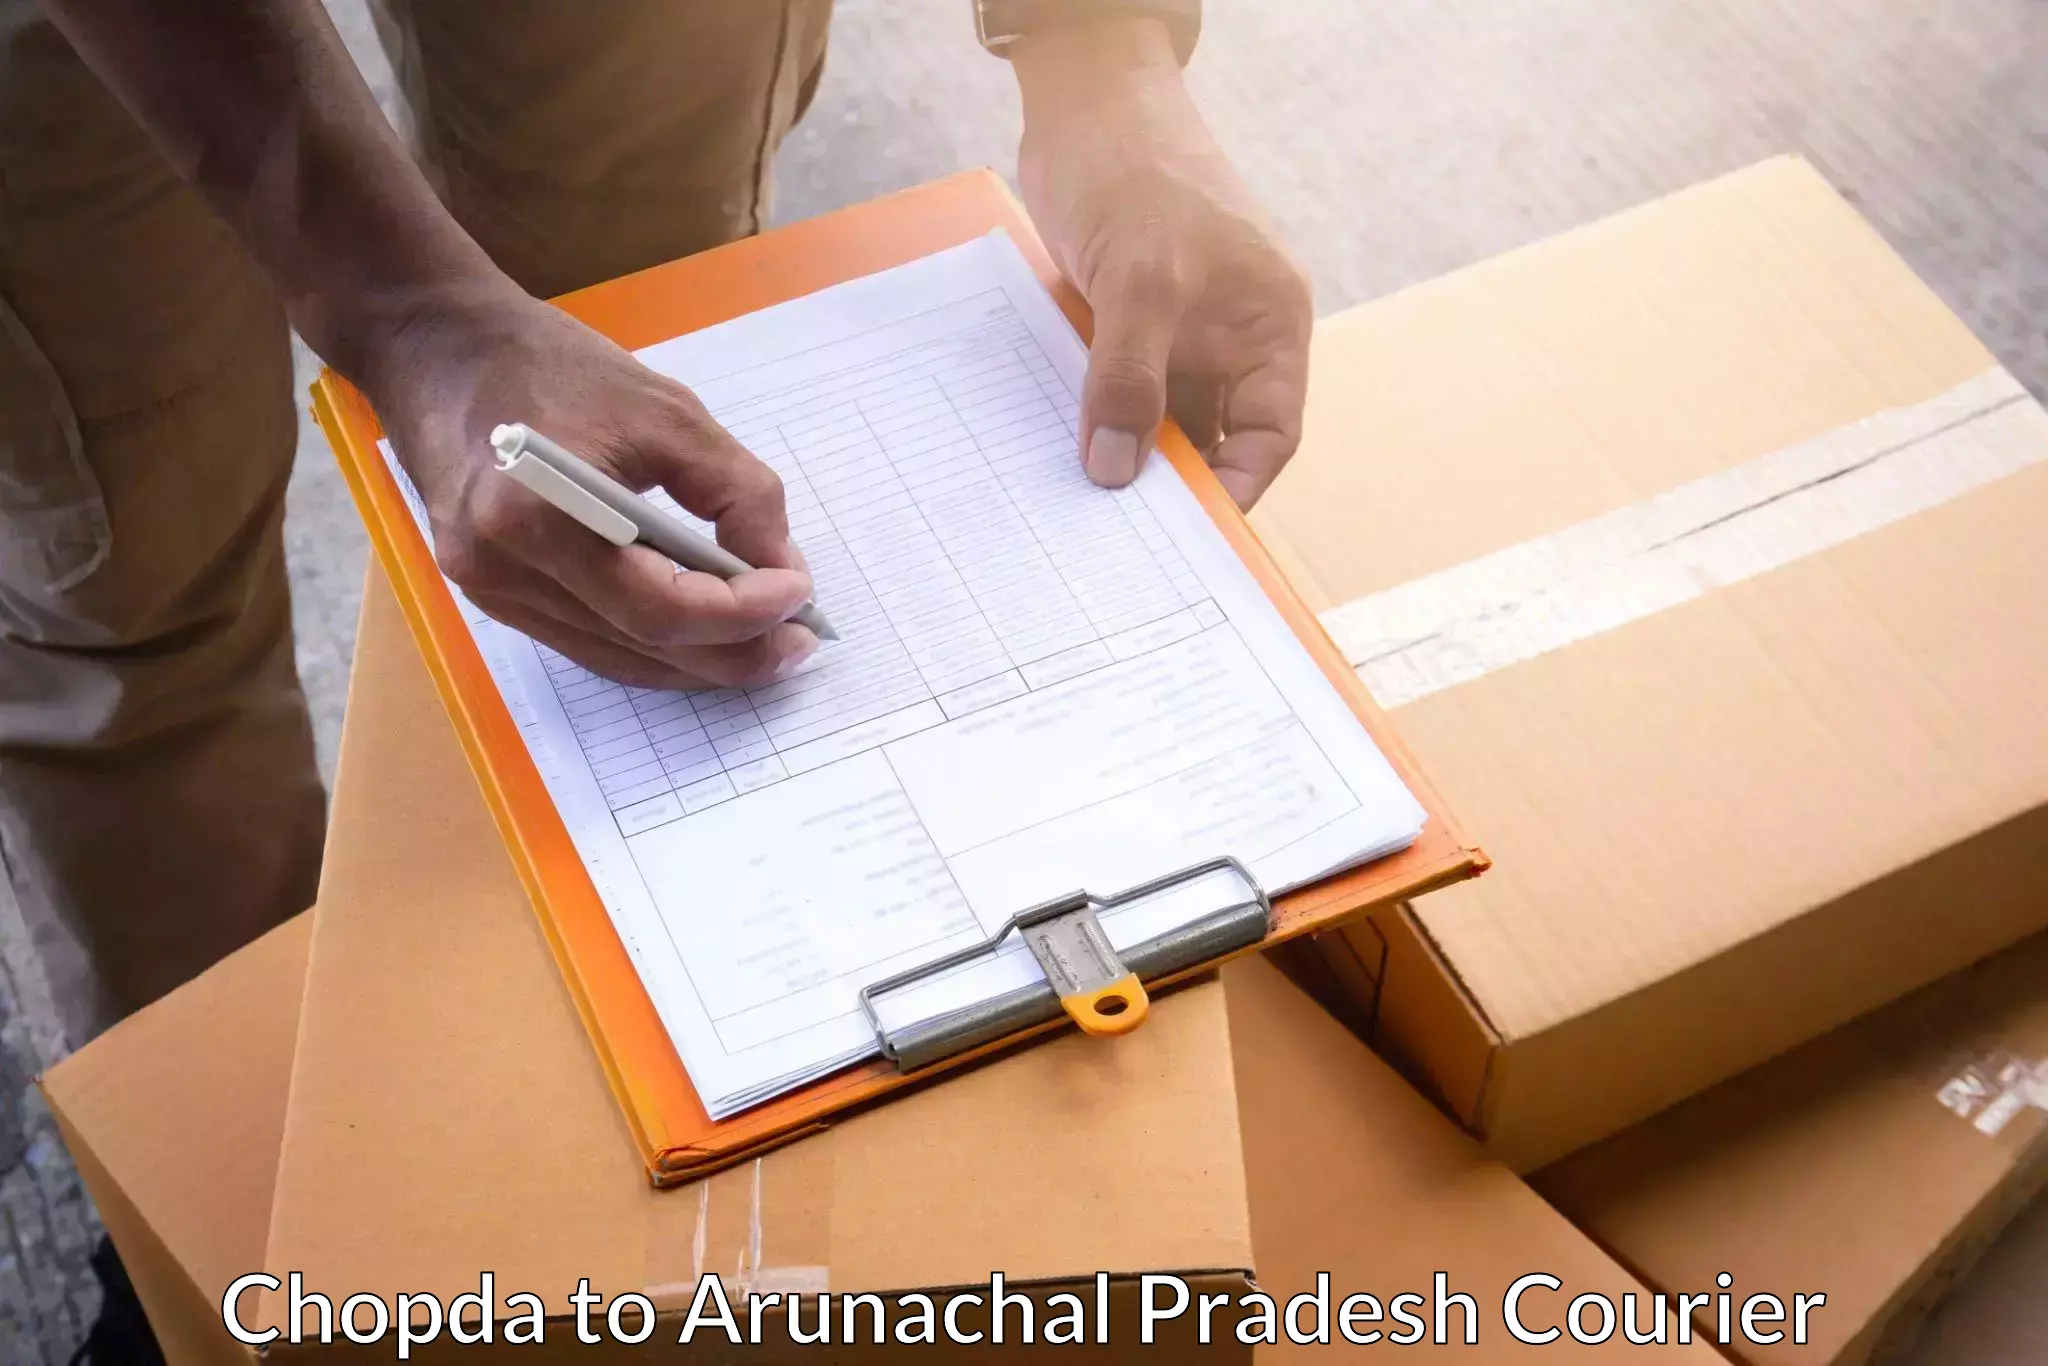 Express package services Chopda to Arunachal Pradesh